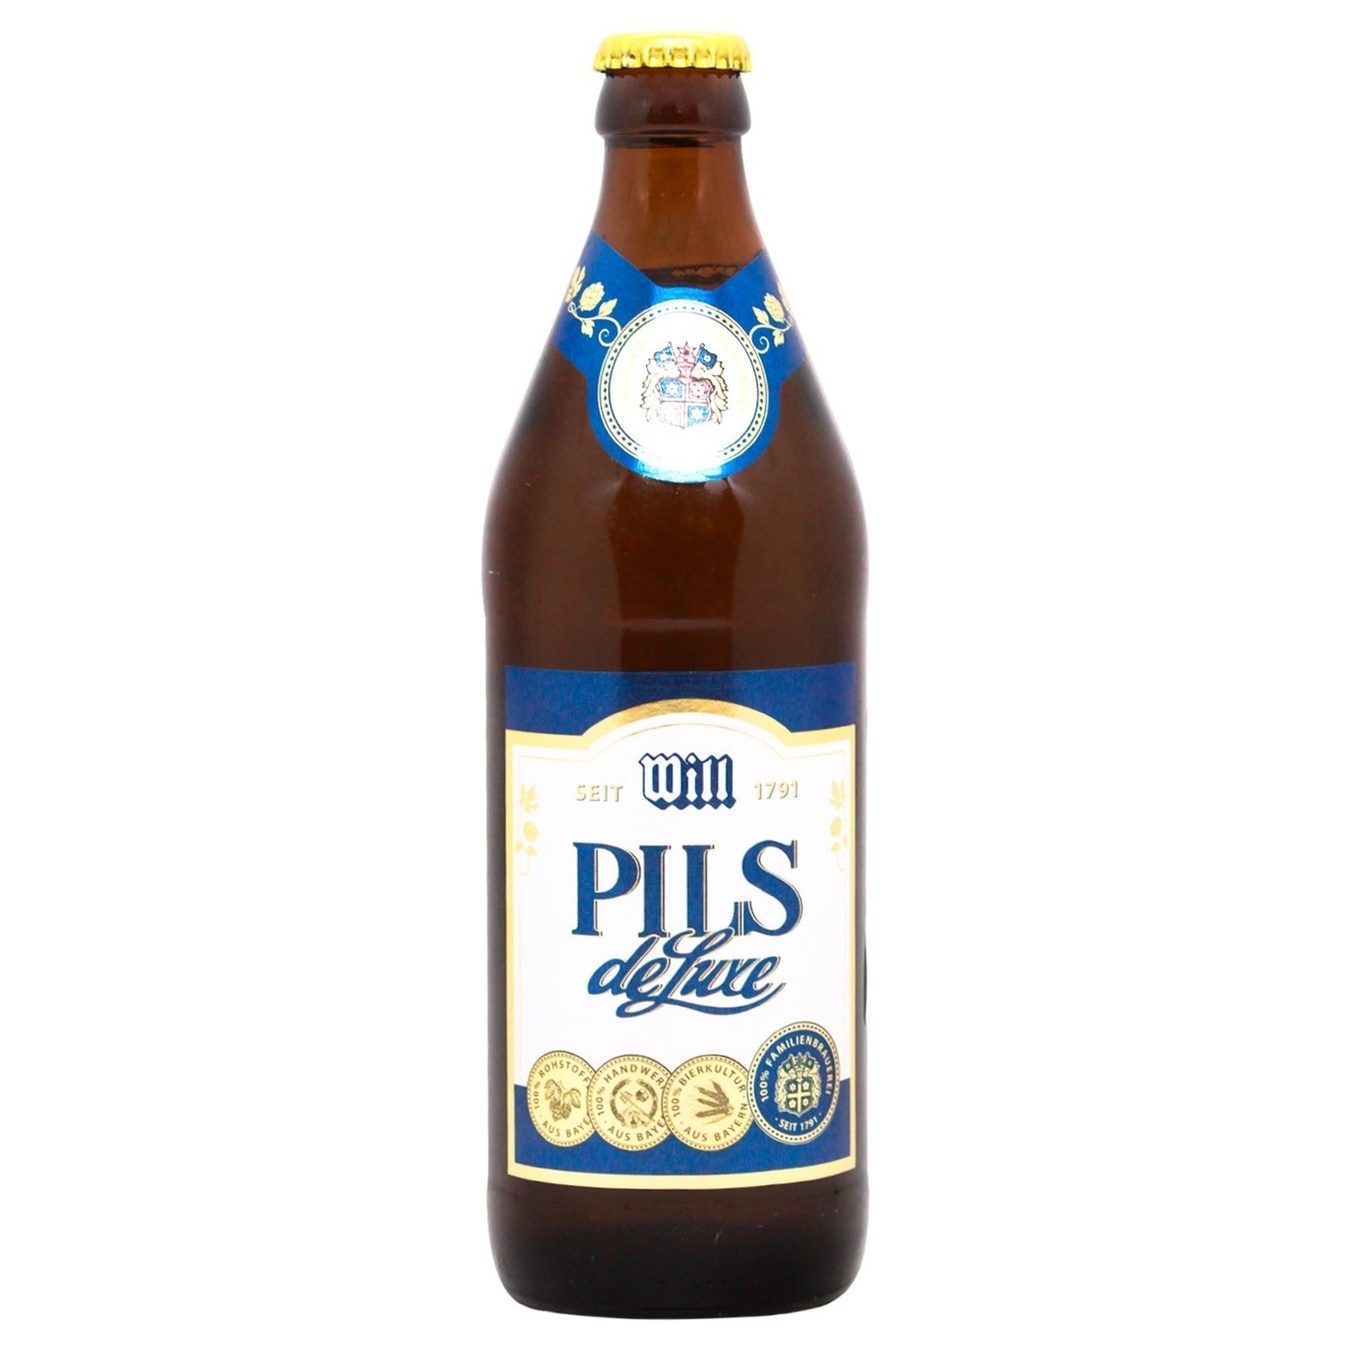 Beer Will Brau Pils deLuxe light 4.9% 0.5l glass bottle